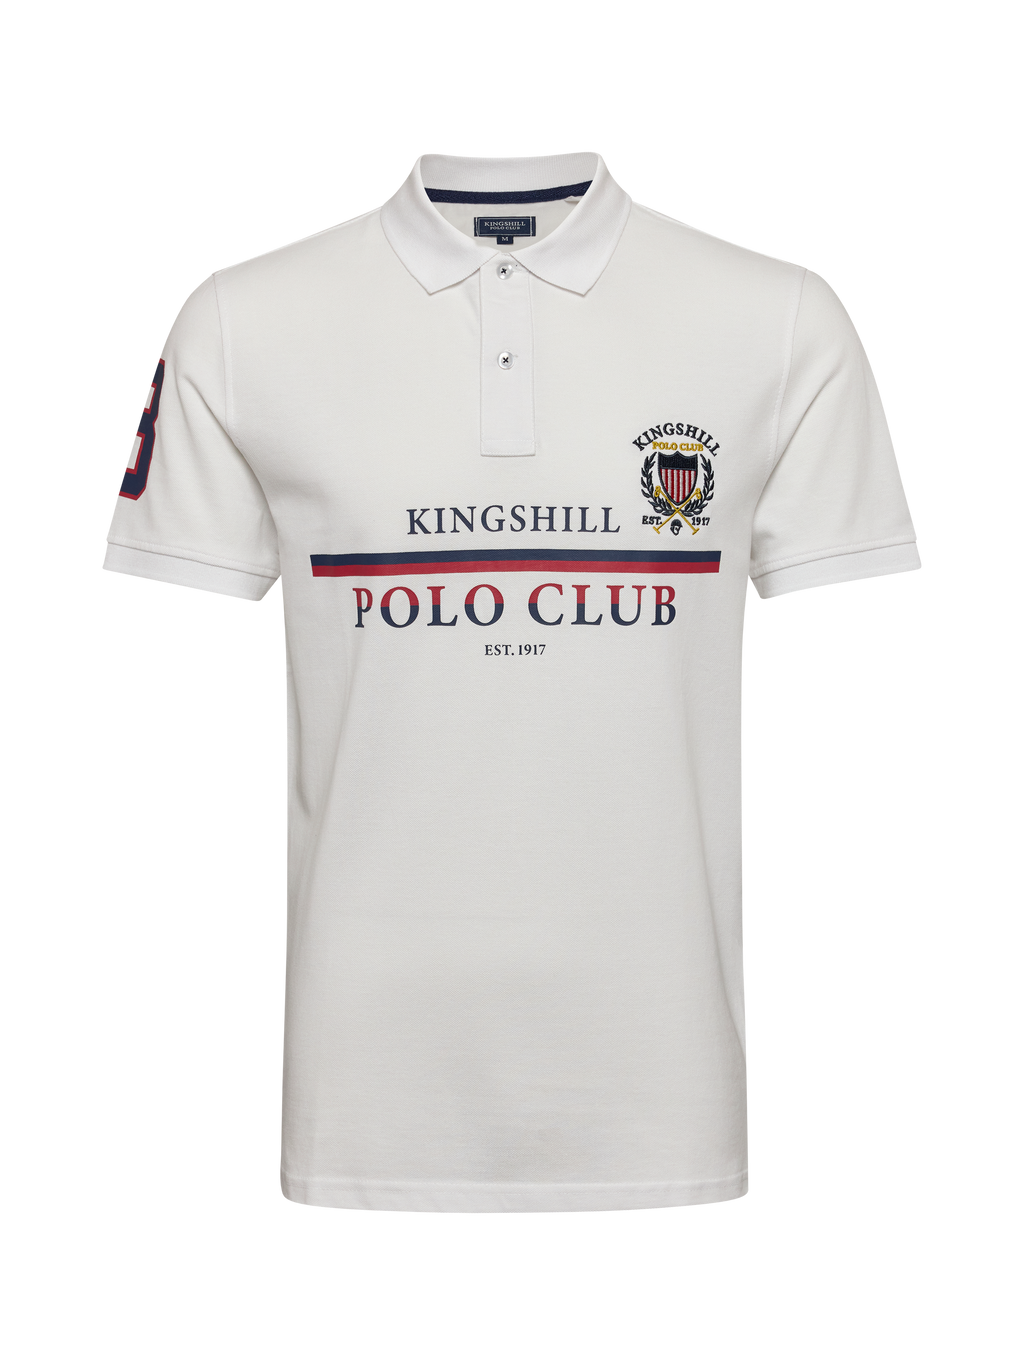 Club Polo – Kingshillpoloclub